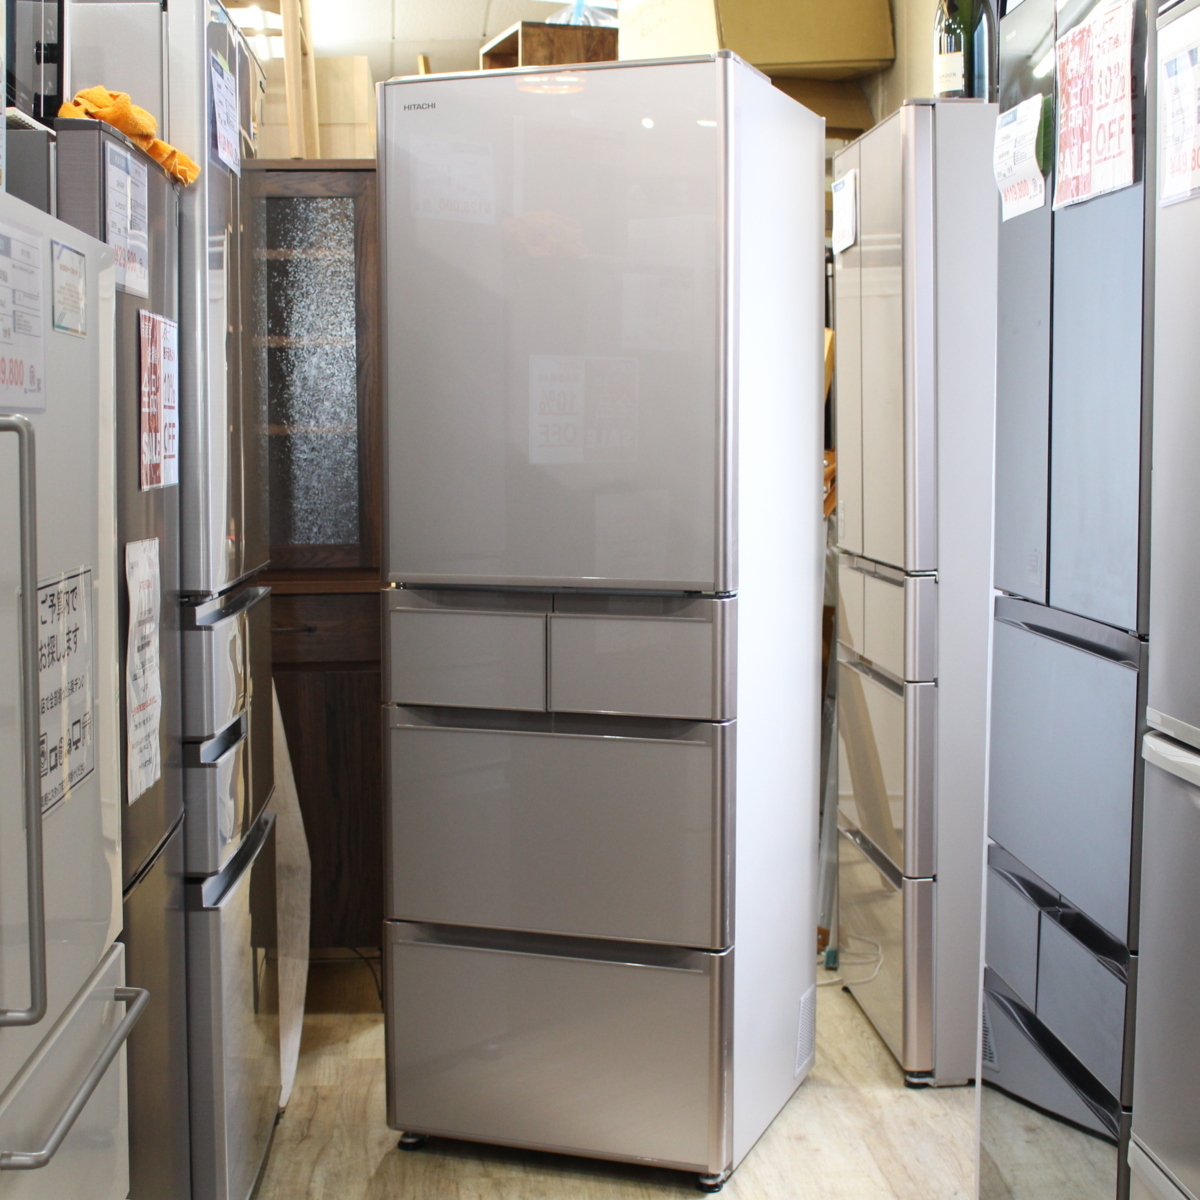 日立 冷蔵庫 401リットル - 京都府の家具